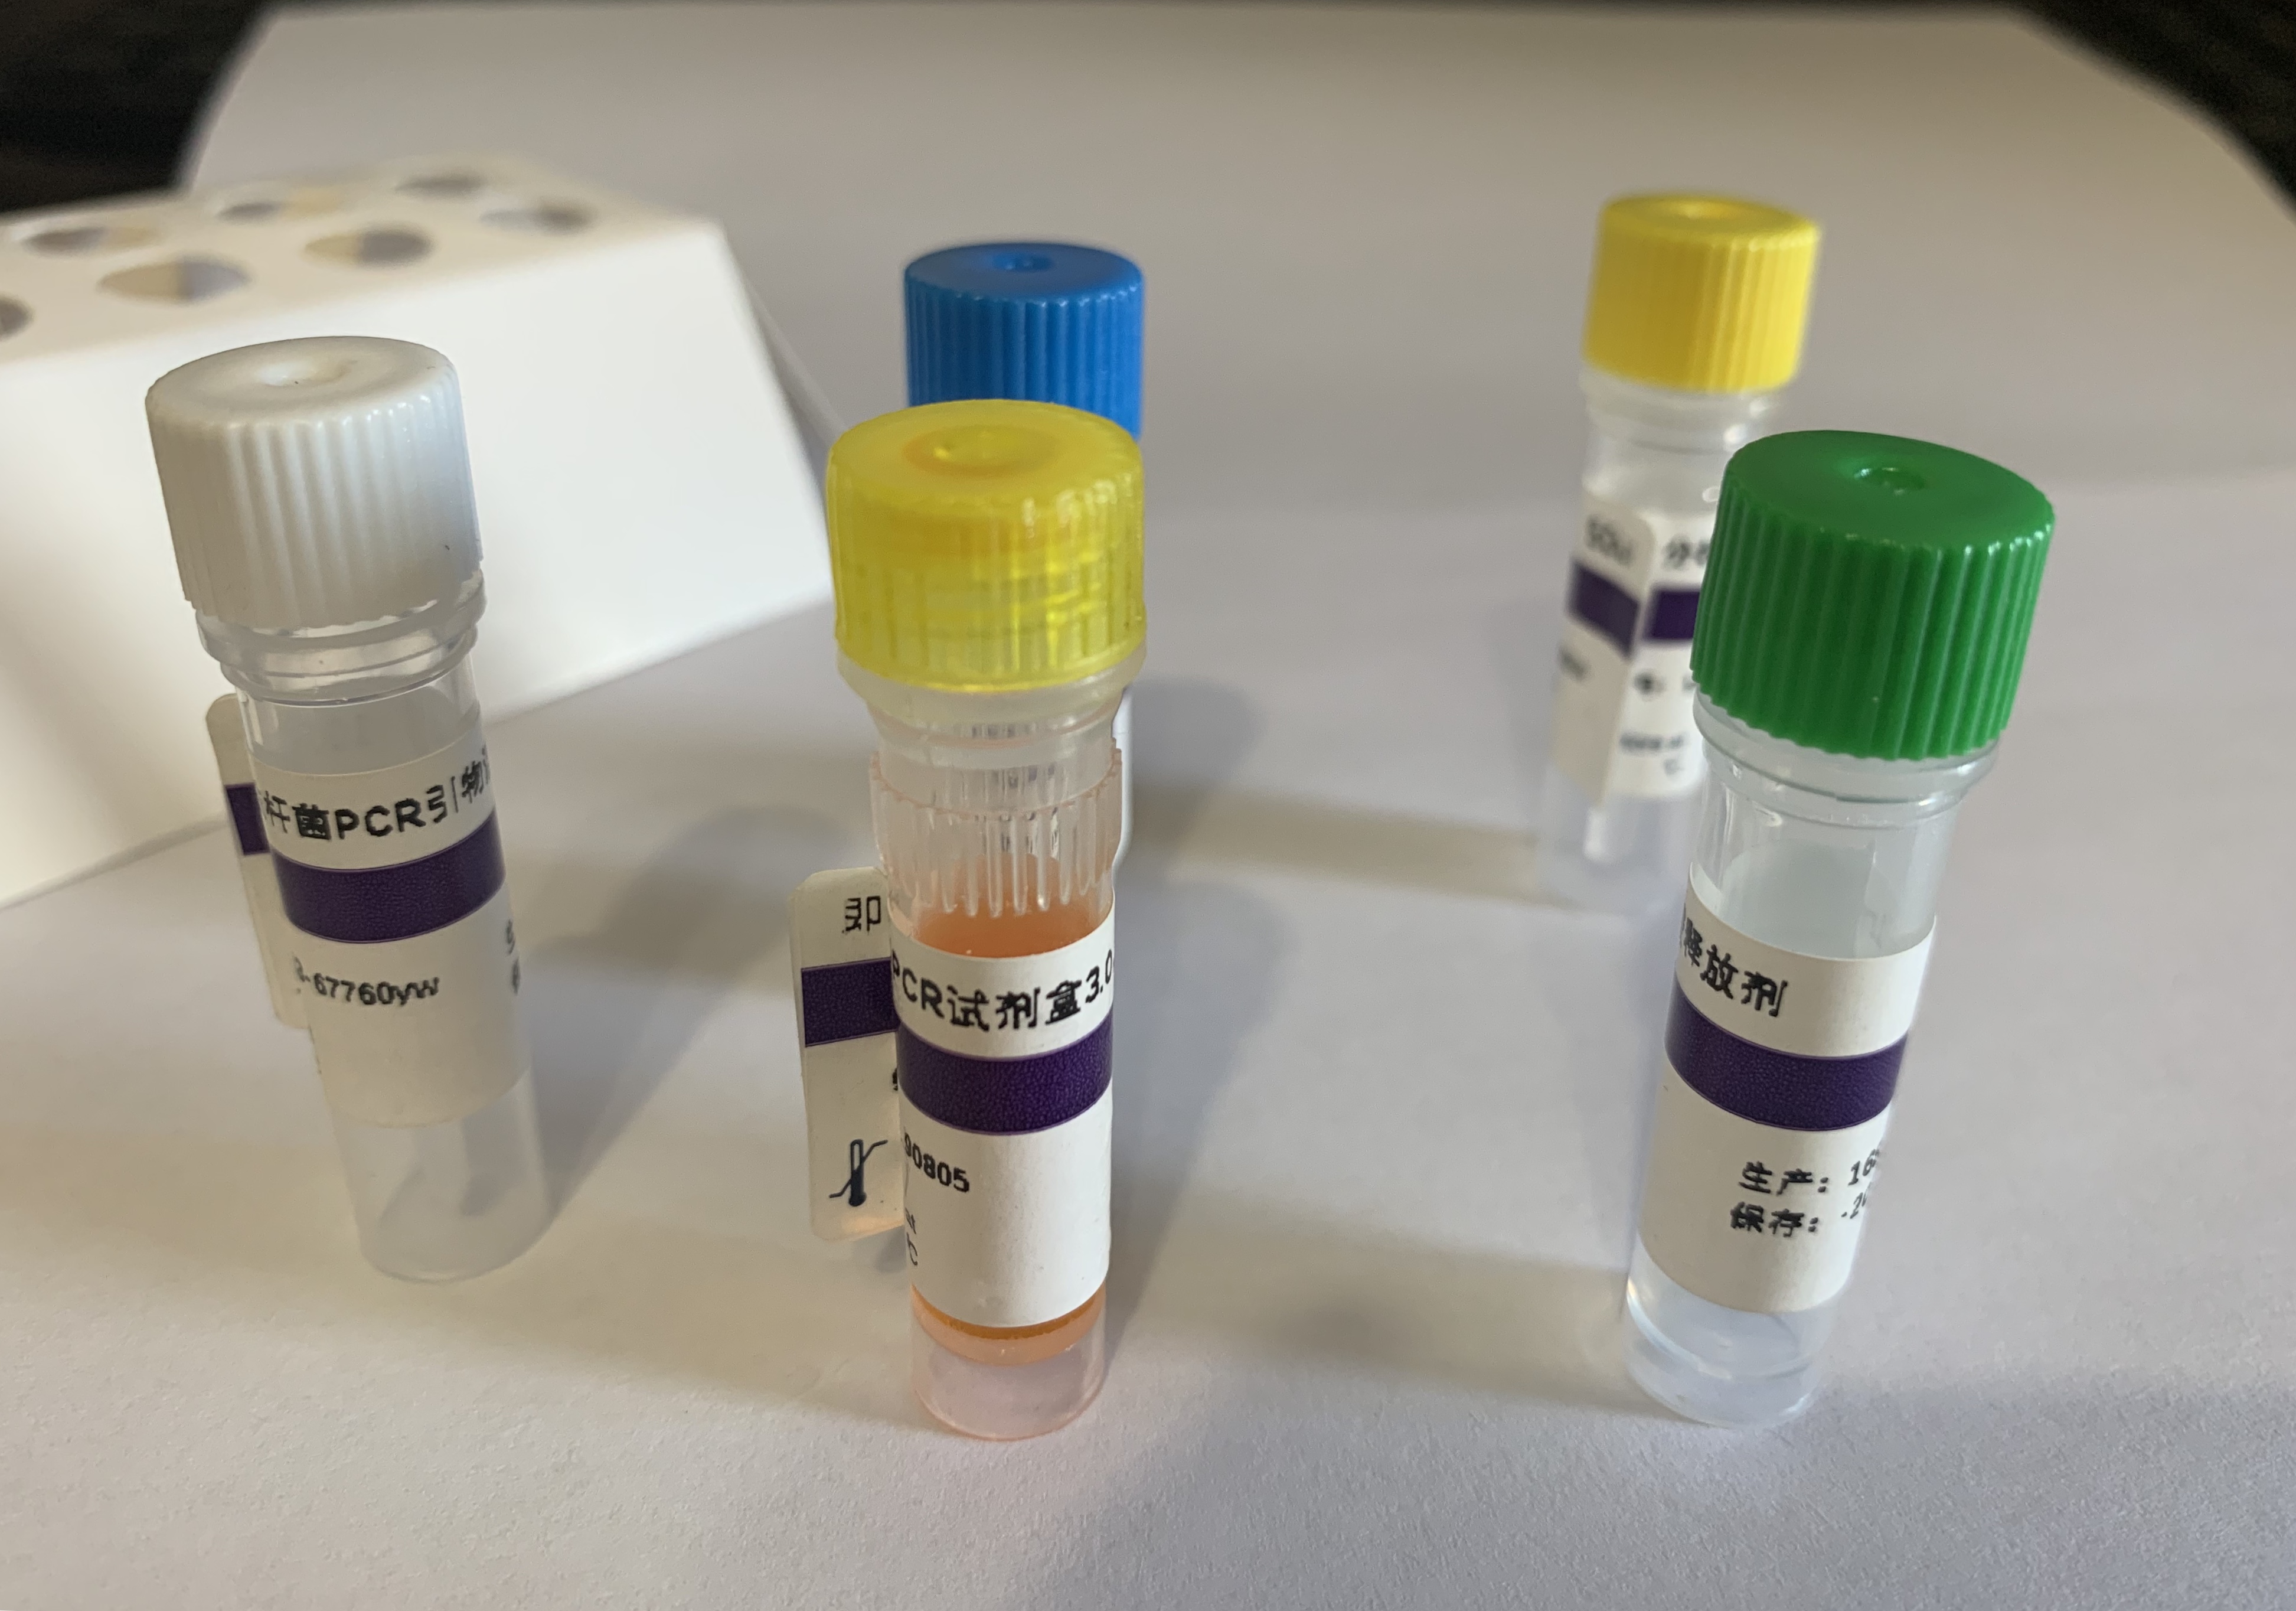 着色霉探针法荧光定量PCR试剂盒